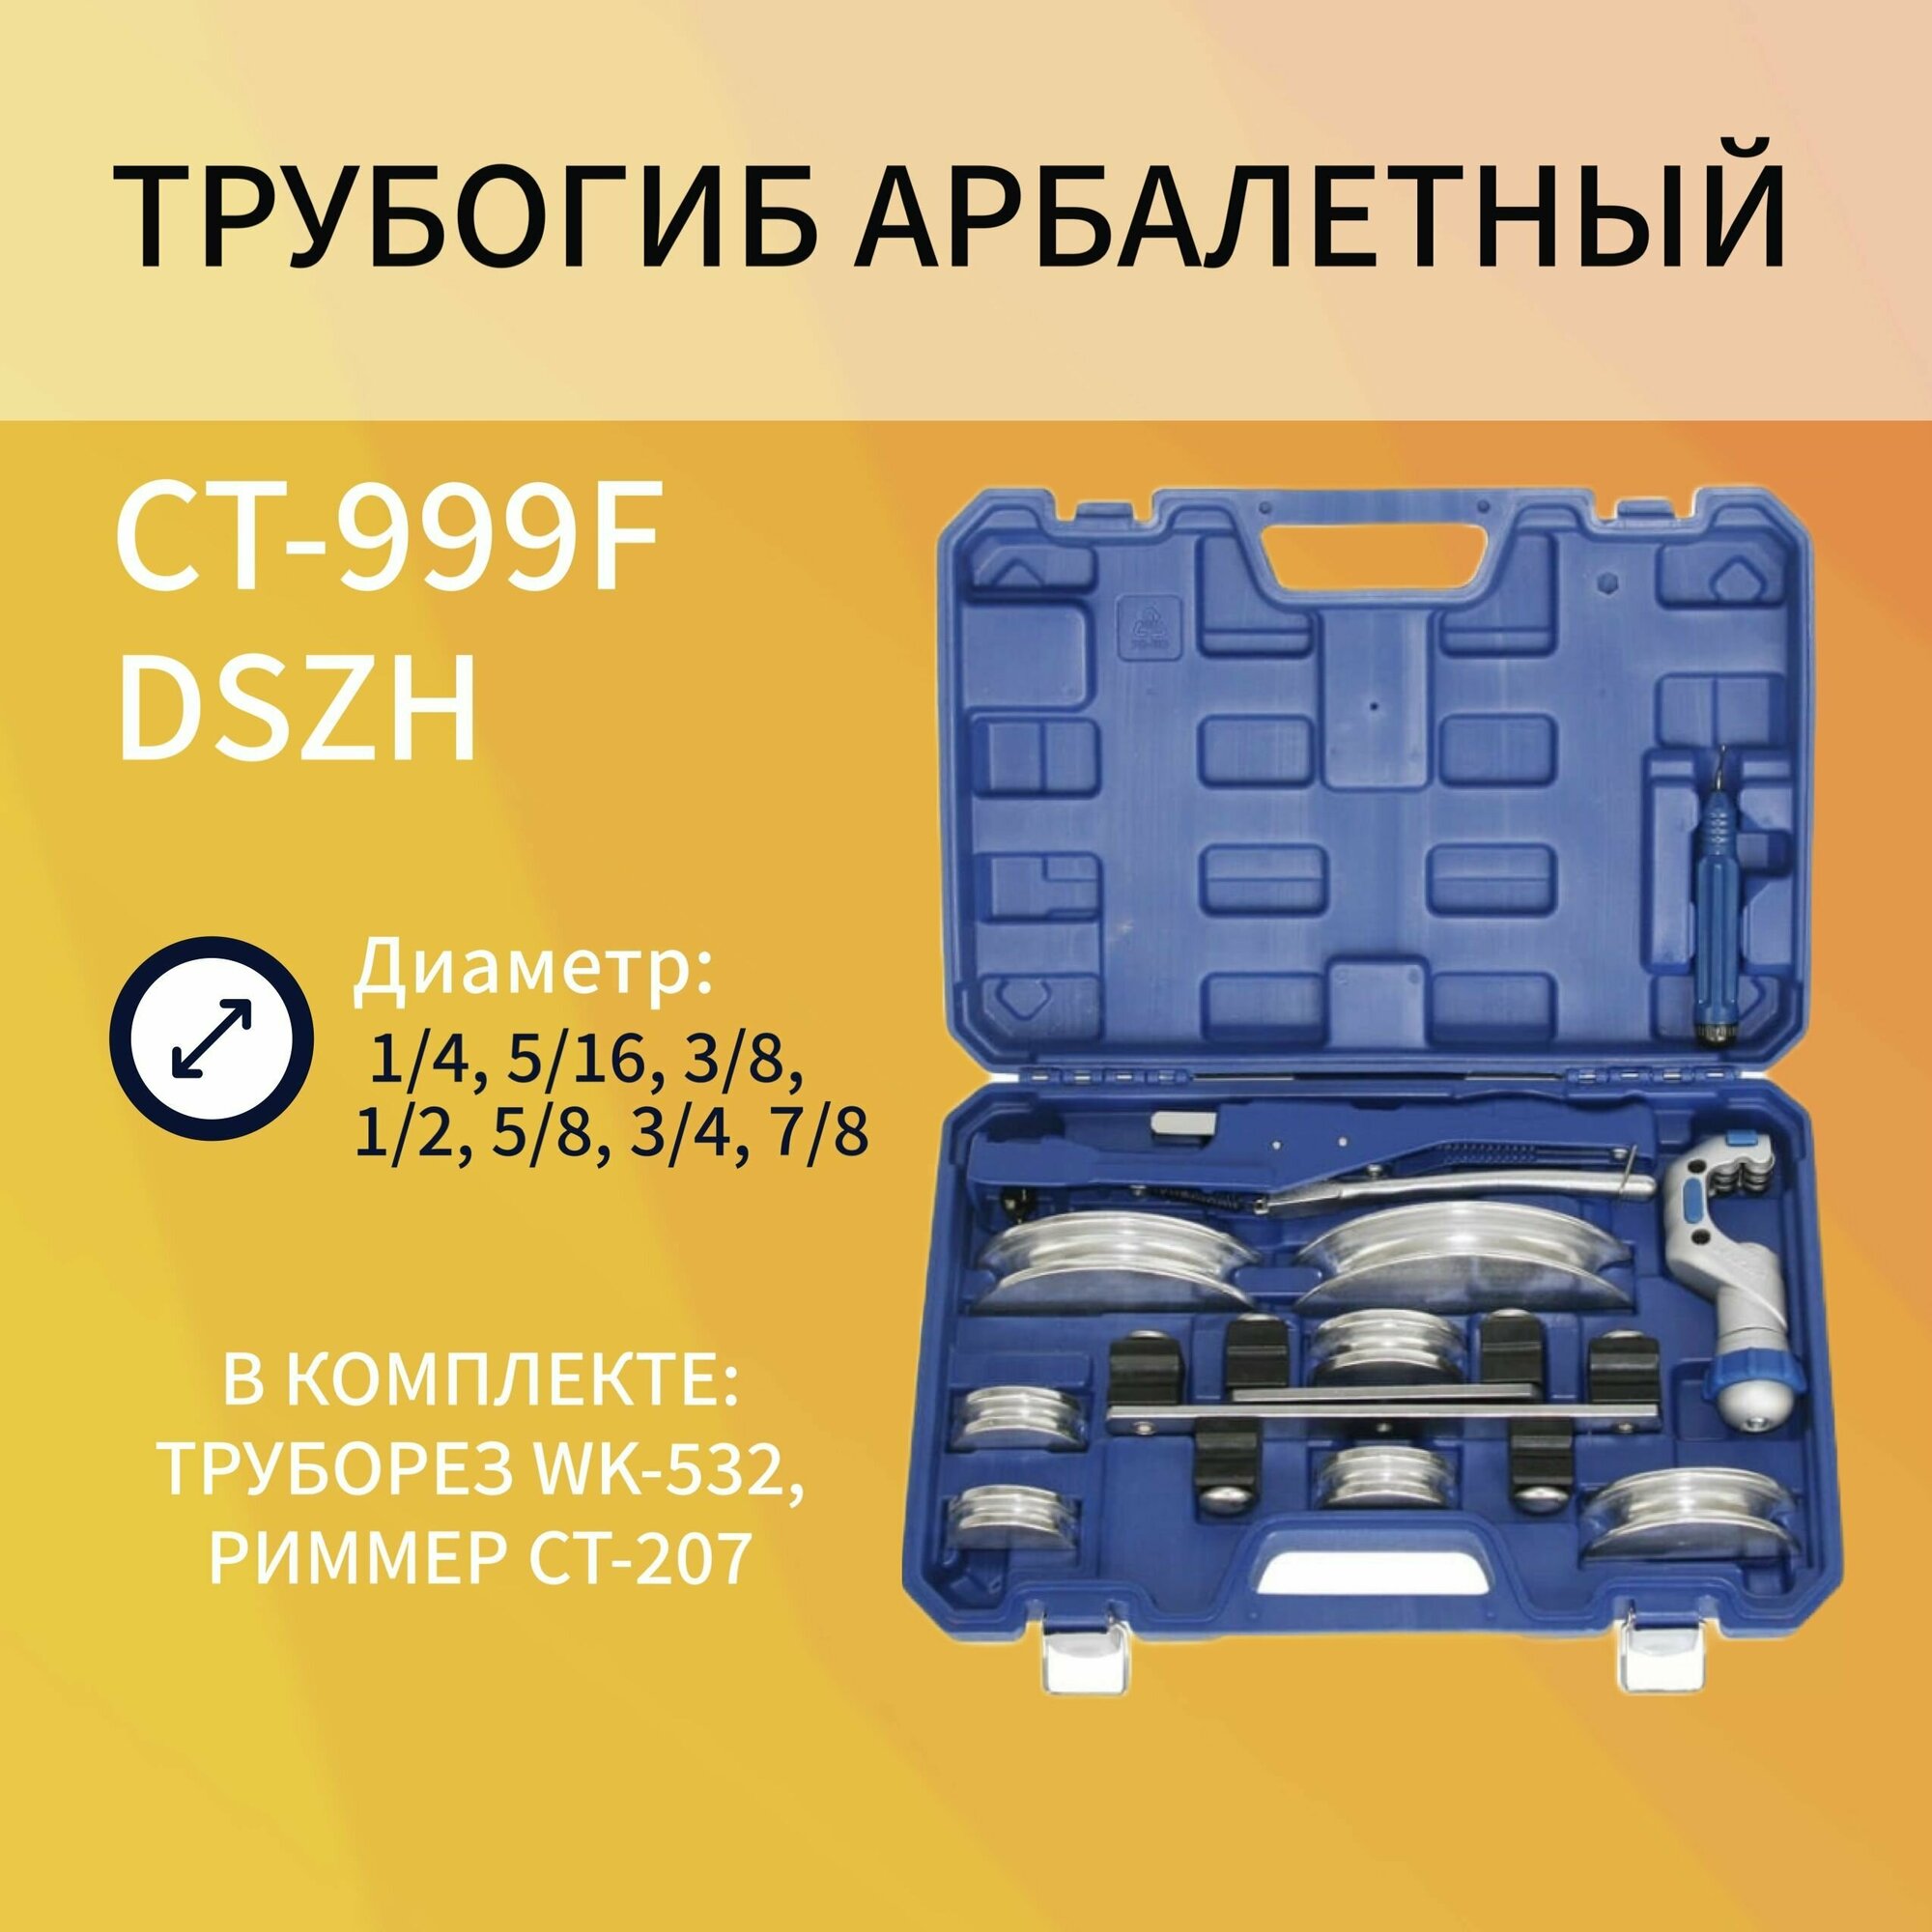 DSZH CT-999F Трубогиб арбалетного типа для трубы диаметром 1/4"-7/8"(6-22mm)